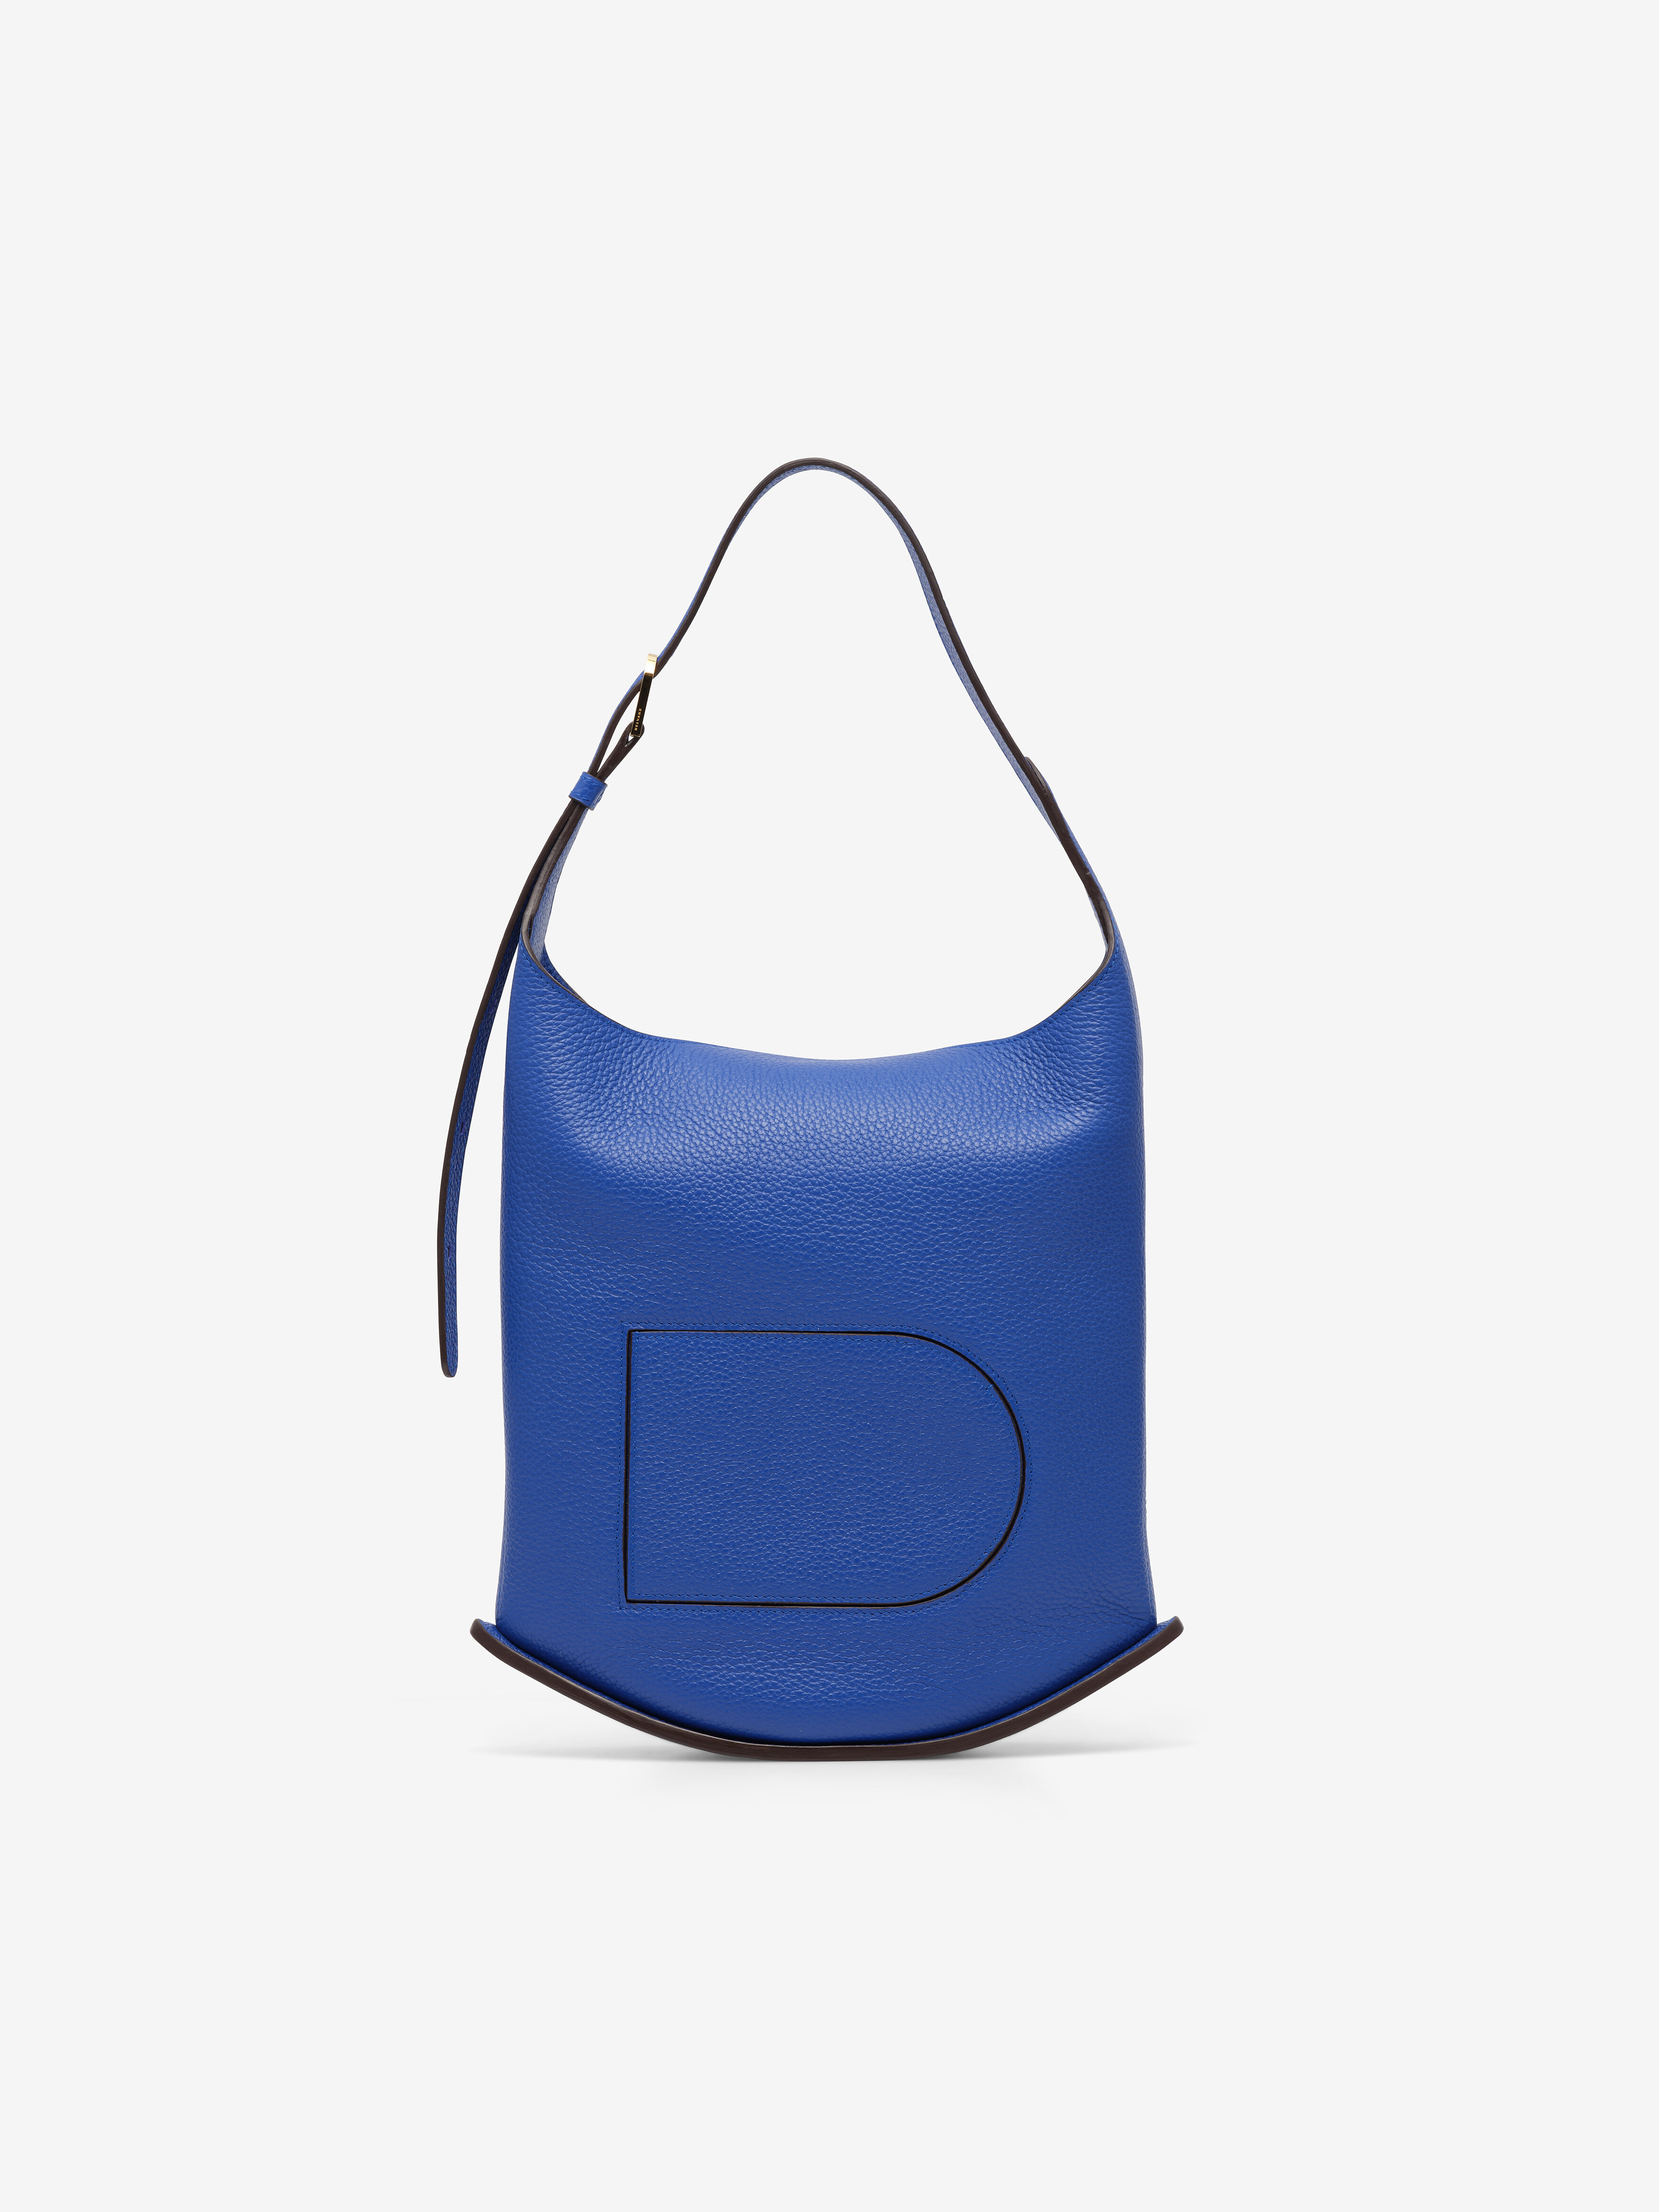 Luxury women handbags | Delvaux